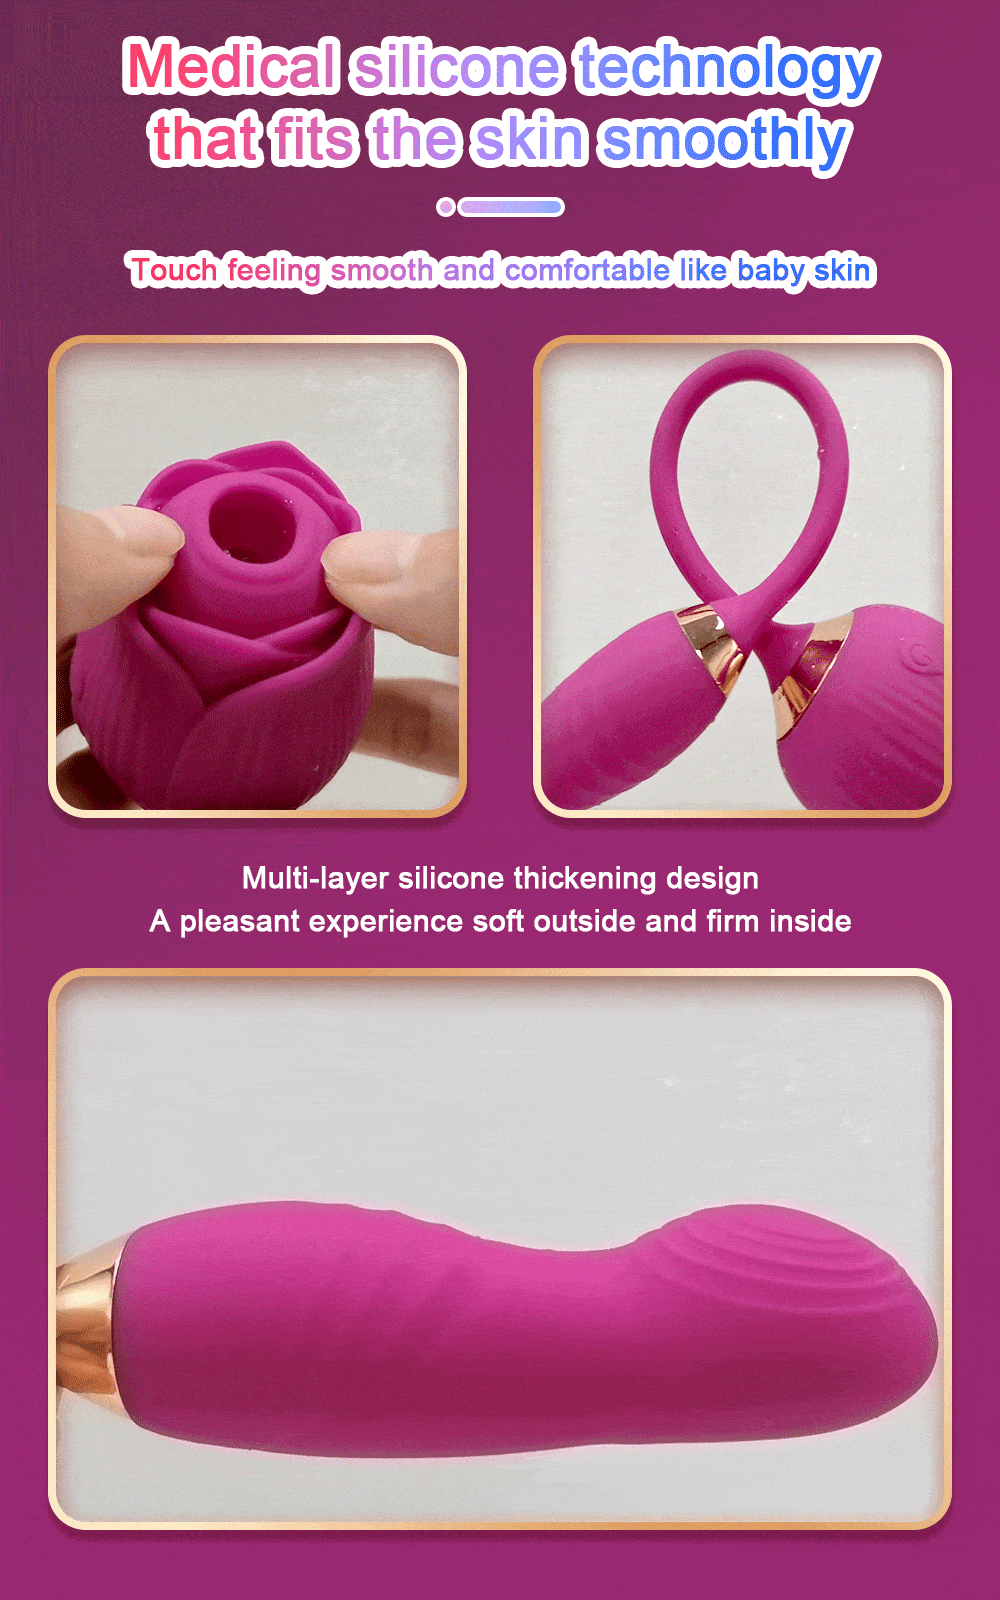 Wireless Sucking Vibrator Nipple Clit Sucker Dildo Women G-Spot Massager  Sex Toy